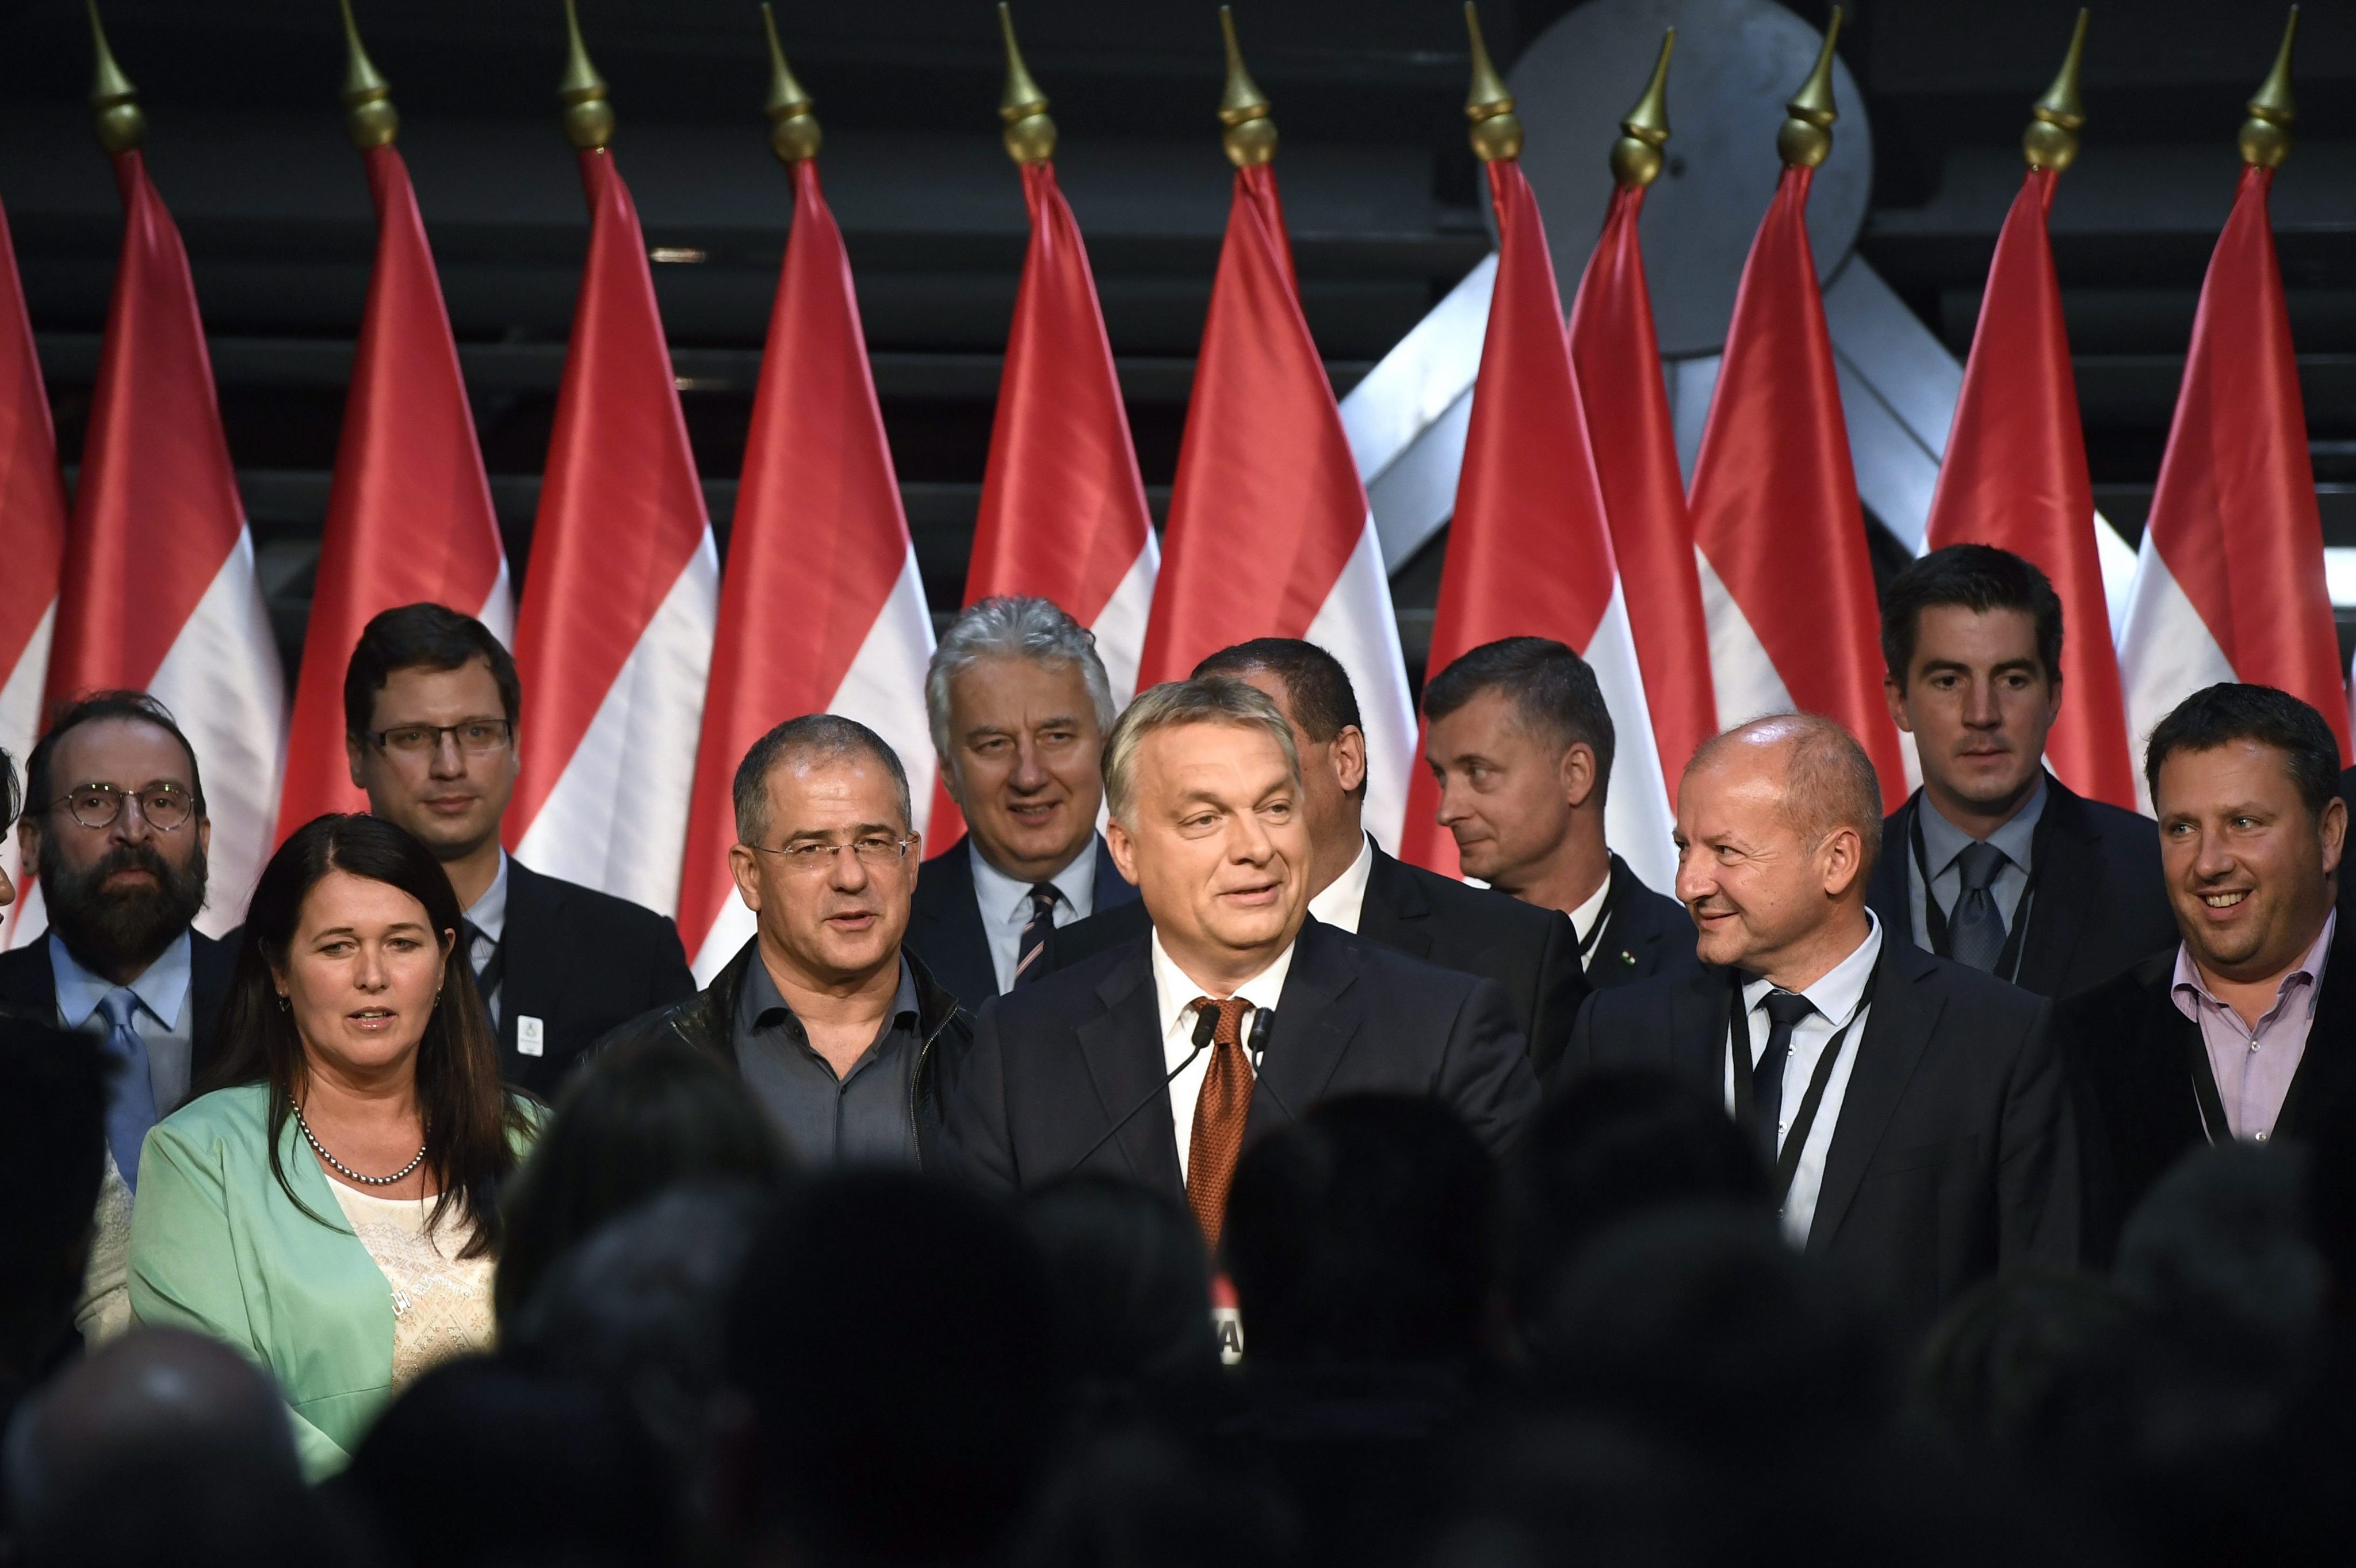 Mala izlaznost na referendumu u Mađarskoj, nužne izmjene ustava da se priznaju rezultati